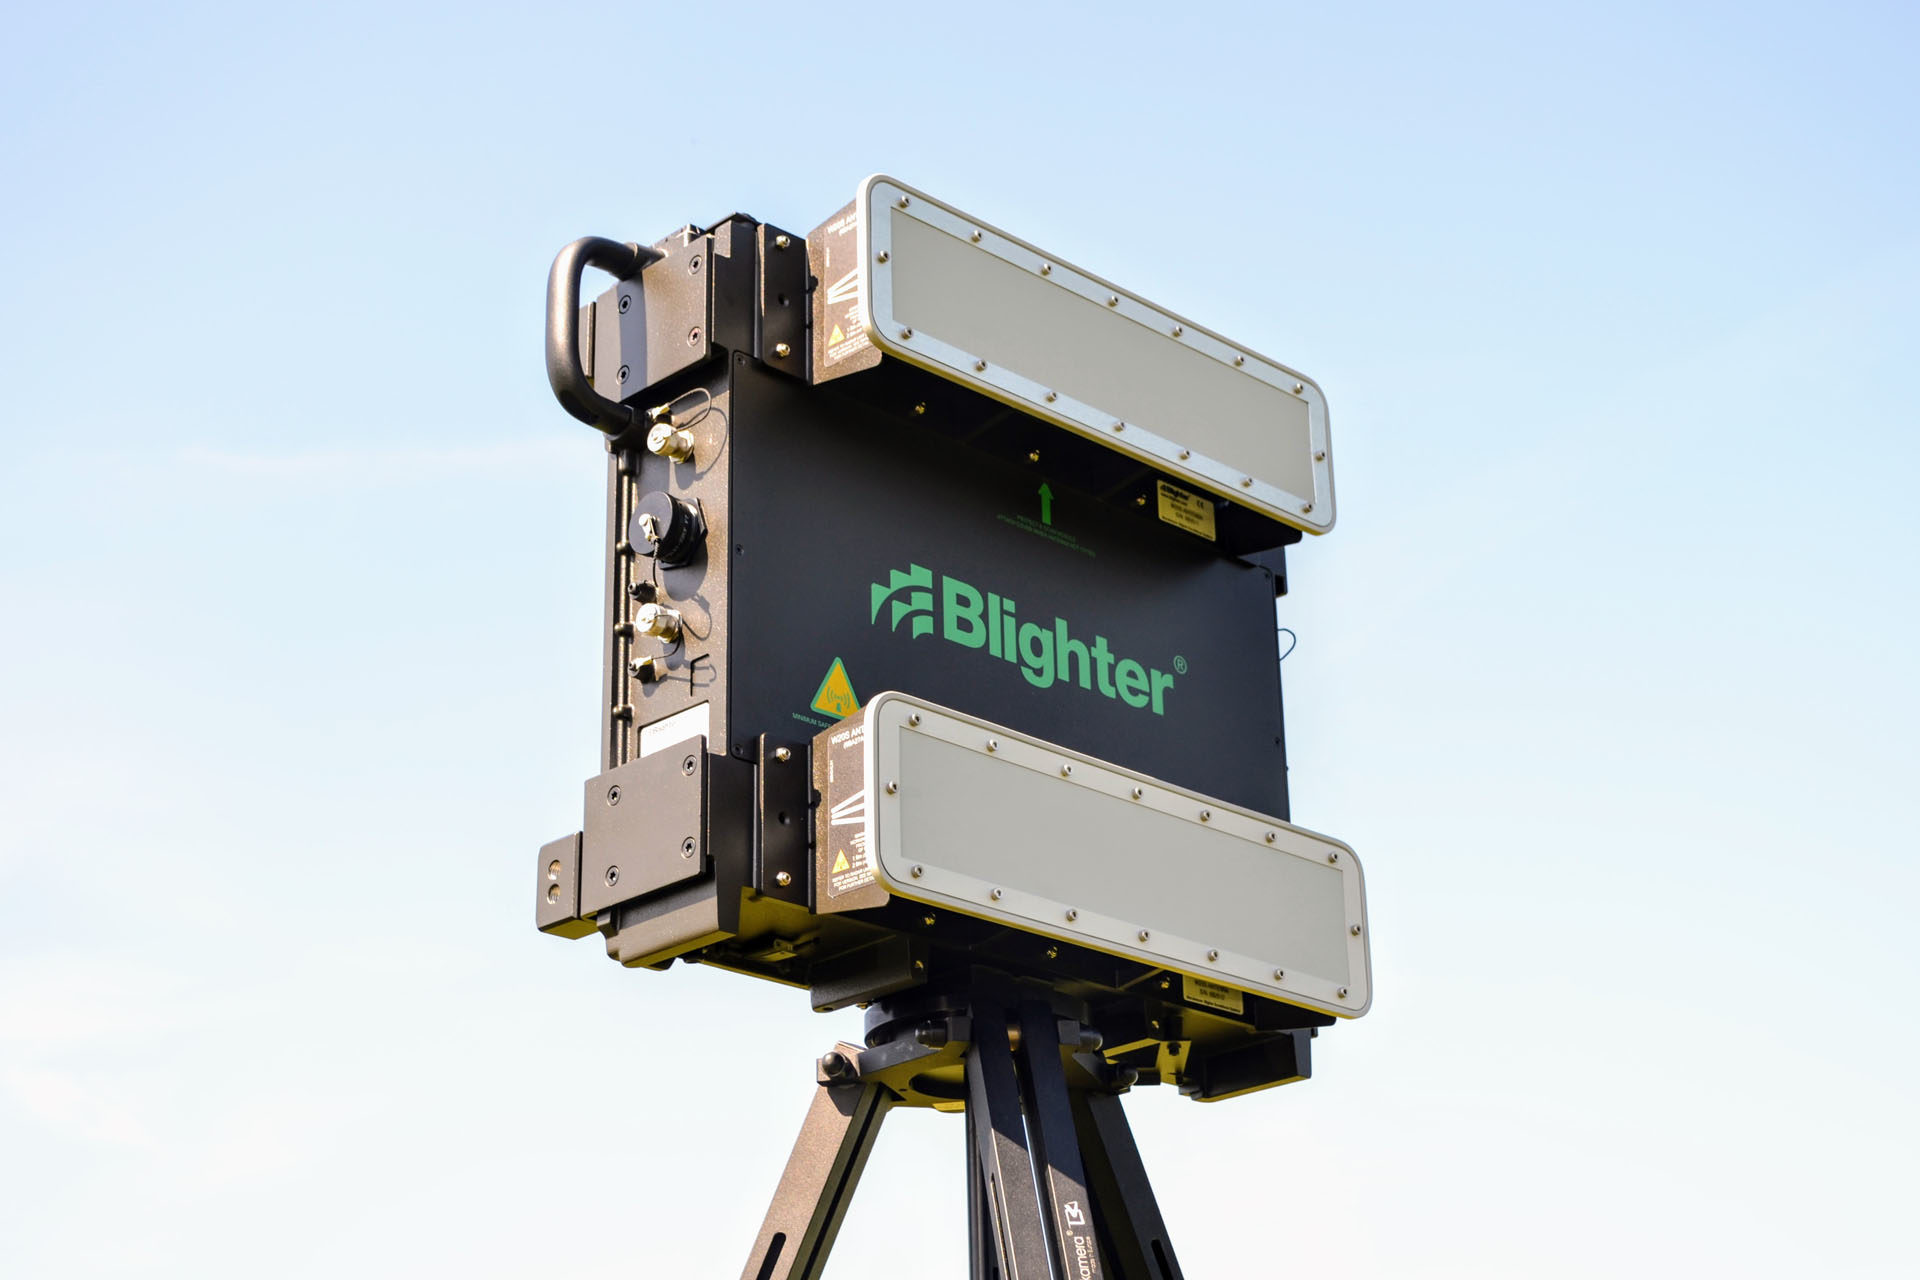 Blighter B402-SP Ground Surveillance Radar with W20S Antennas on Tripod (Green)